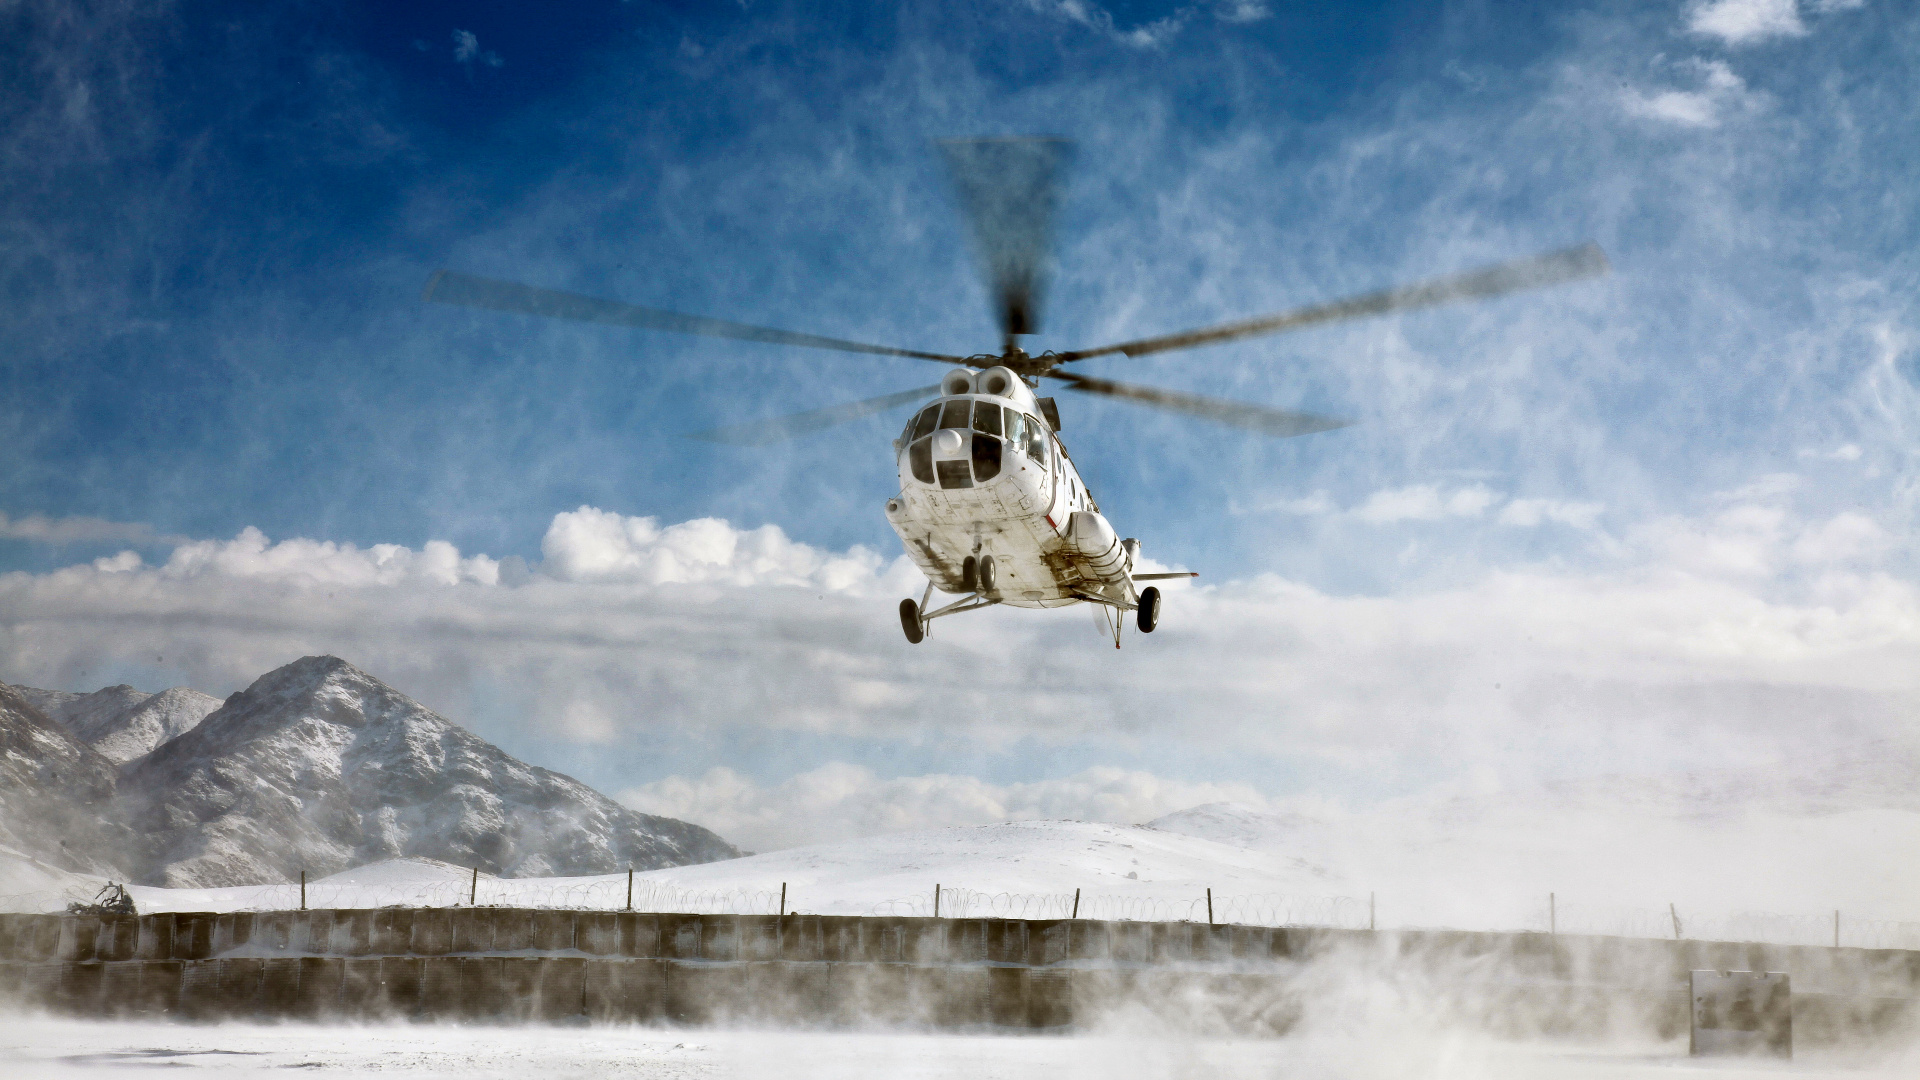 Helicóptero Blanco y Negro Sobrevolando Montañas Cubiertas de Nieve Durante el Día. Wallpaper in 1920x1080 Resolution